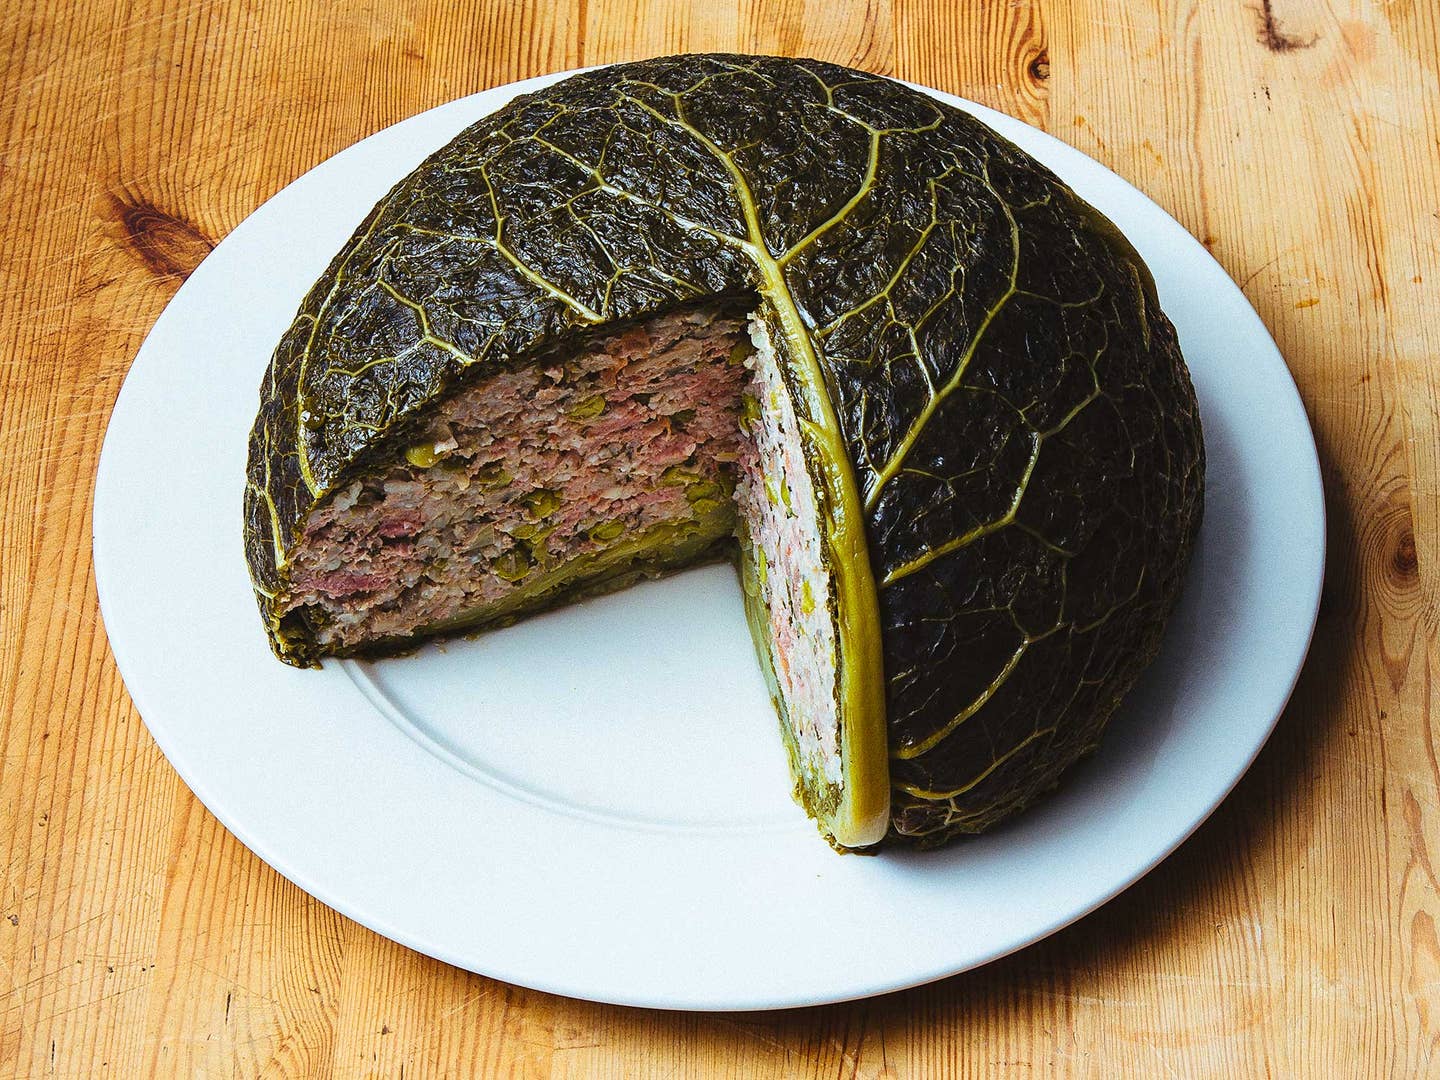 Best Chou Farci Recipe - How to Make Stuffed Cabbage